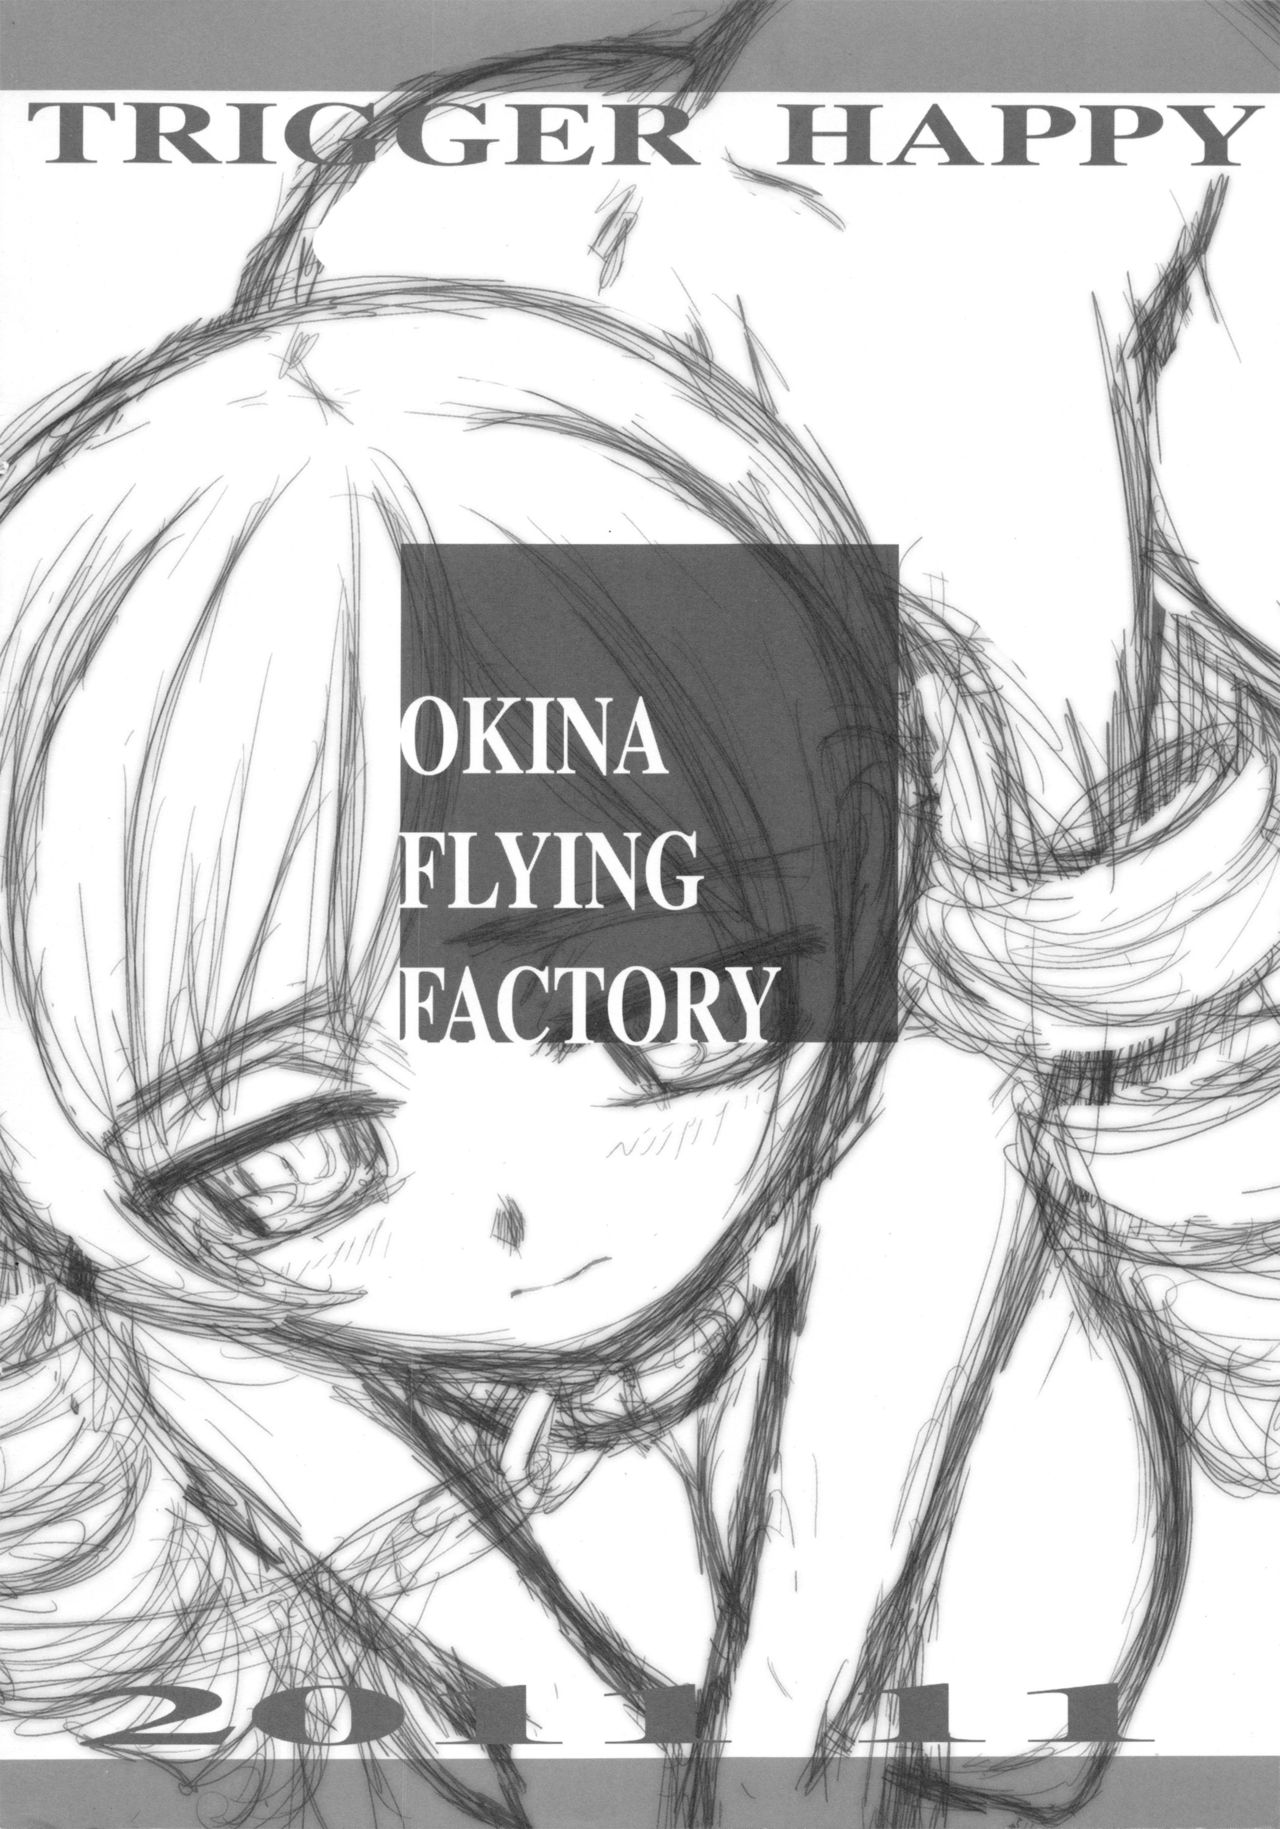 [Okina Flying Factory (OKINA)] TRIGGER HAPPY (Puella Magi Madoka Magica) [Okina Flying Factory (OKINA)] TRIGGER HAPPY (魔法少女まどか☆マギカ)